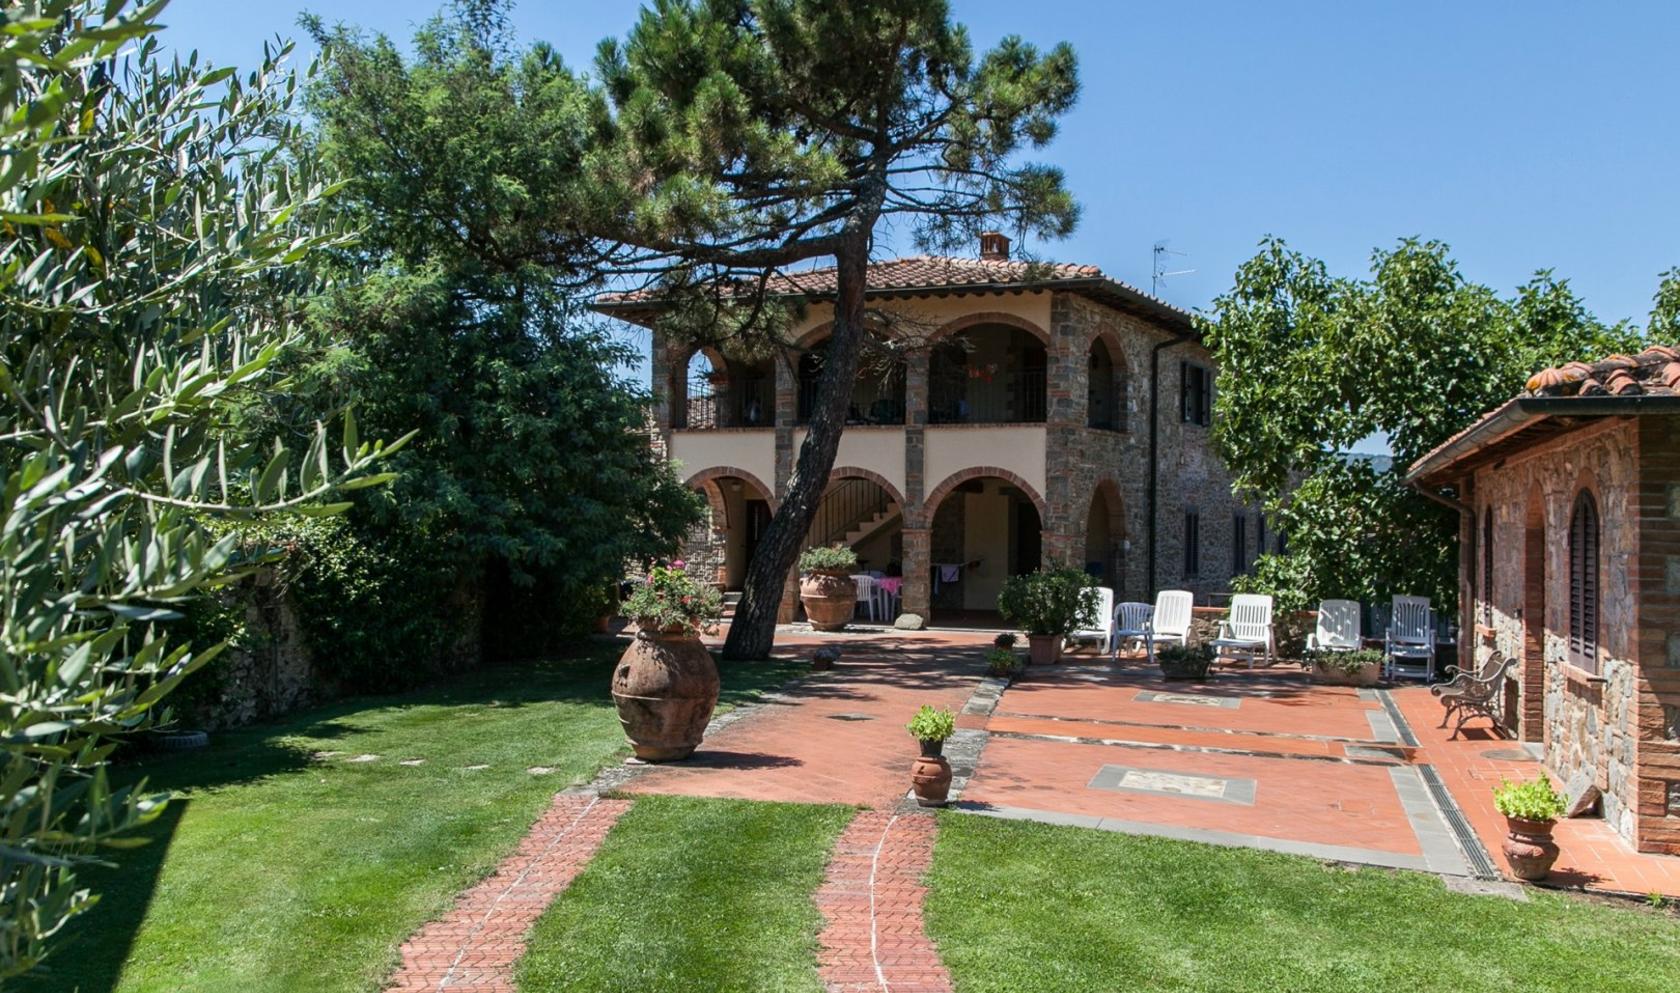 Toscana Immobiliare - Bucine, Azienda agricola con vigneto e oliveto in vendita.